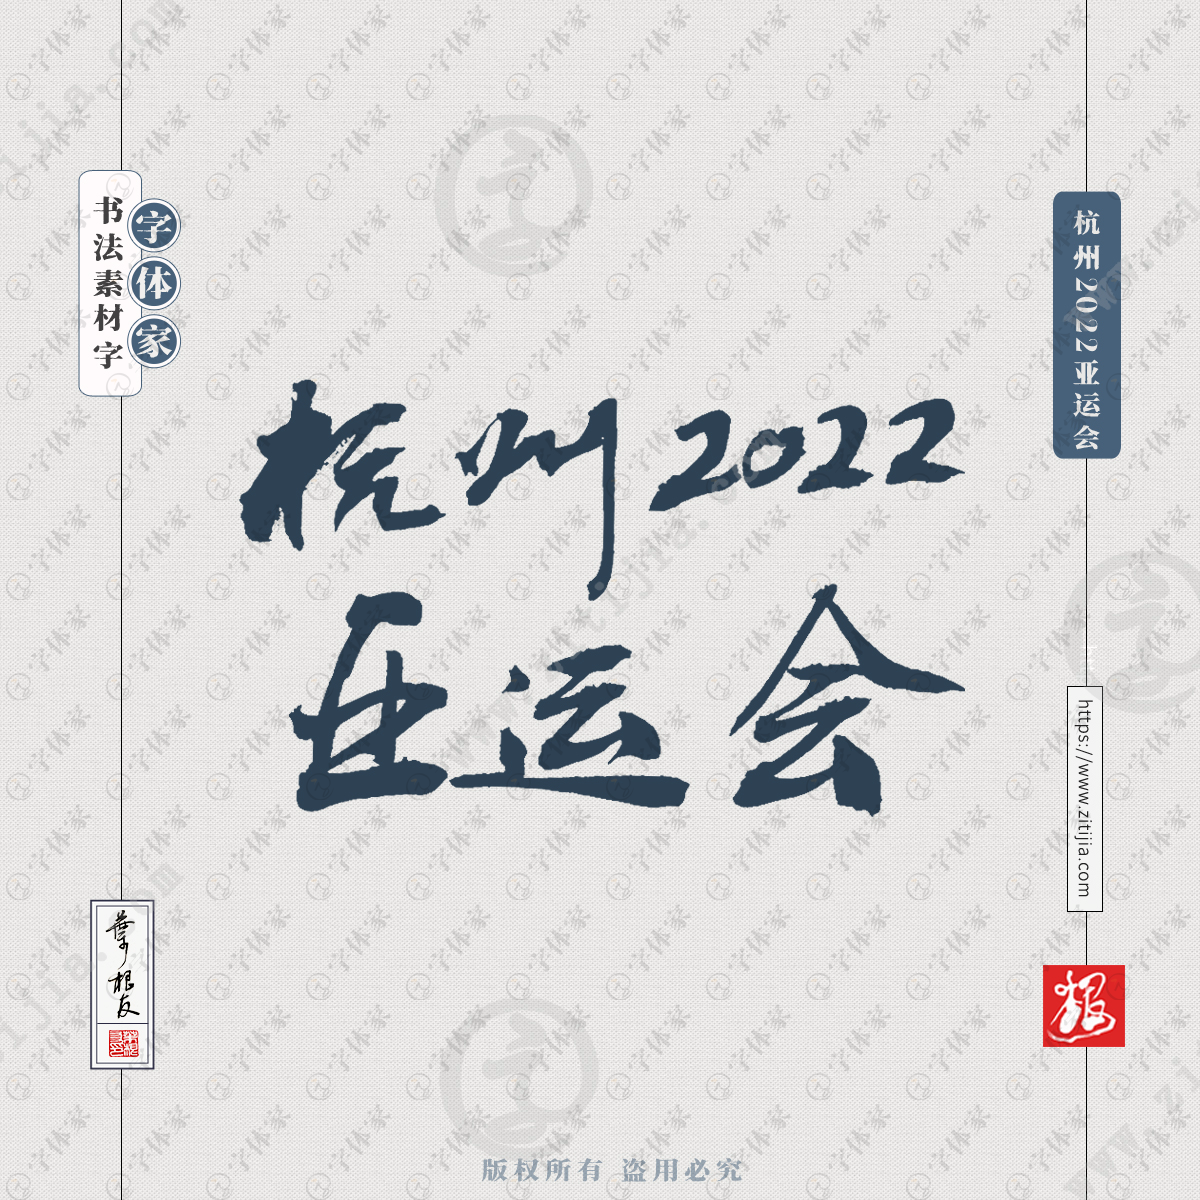 杭州2022亚运会叶根友亚运会文案书法字体可下载源文件书法素材